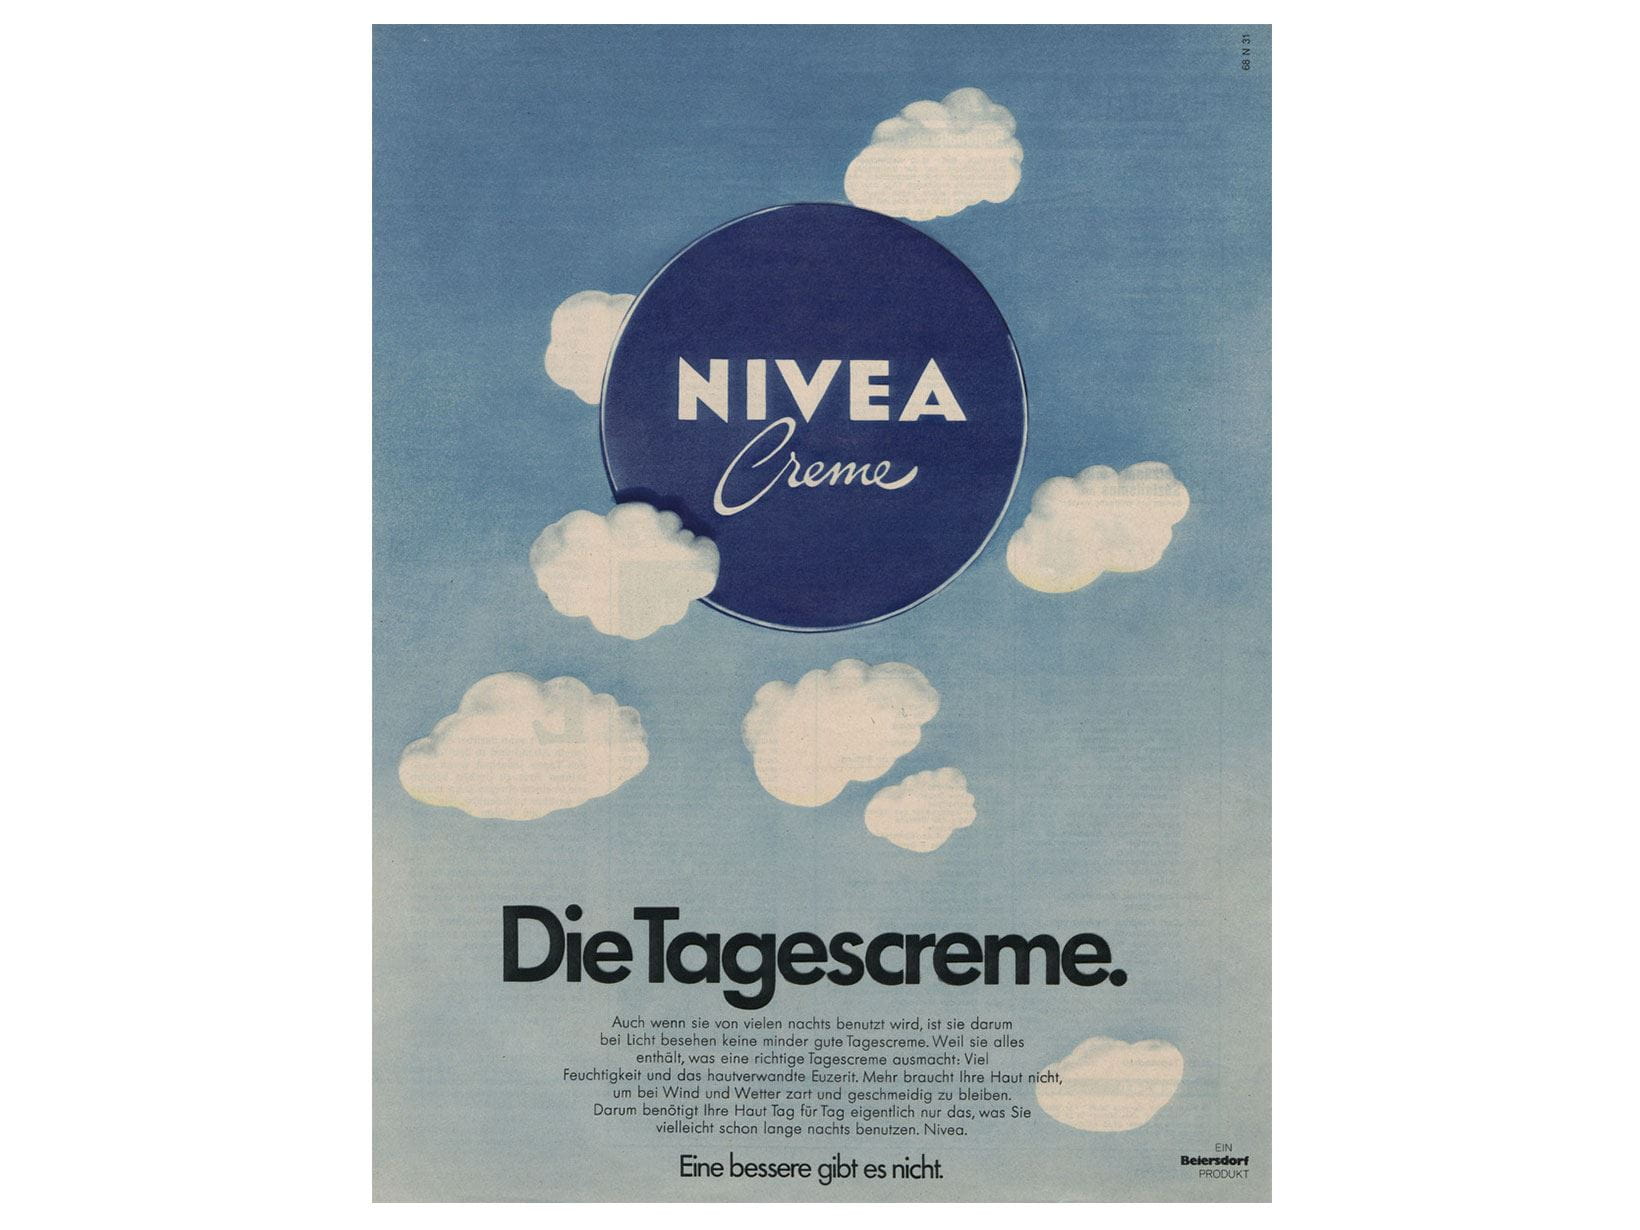 NIVEA Werbeanzeige von 1973: Die Tagescreme.